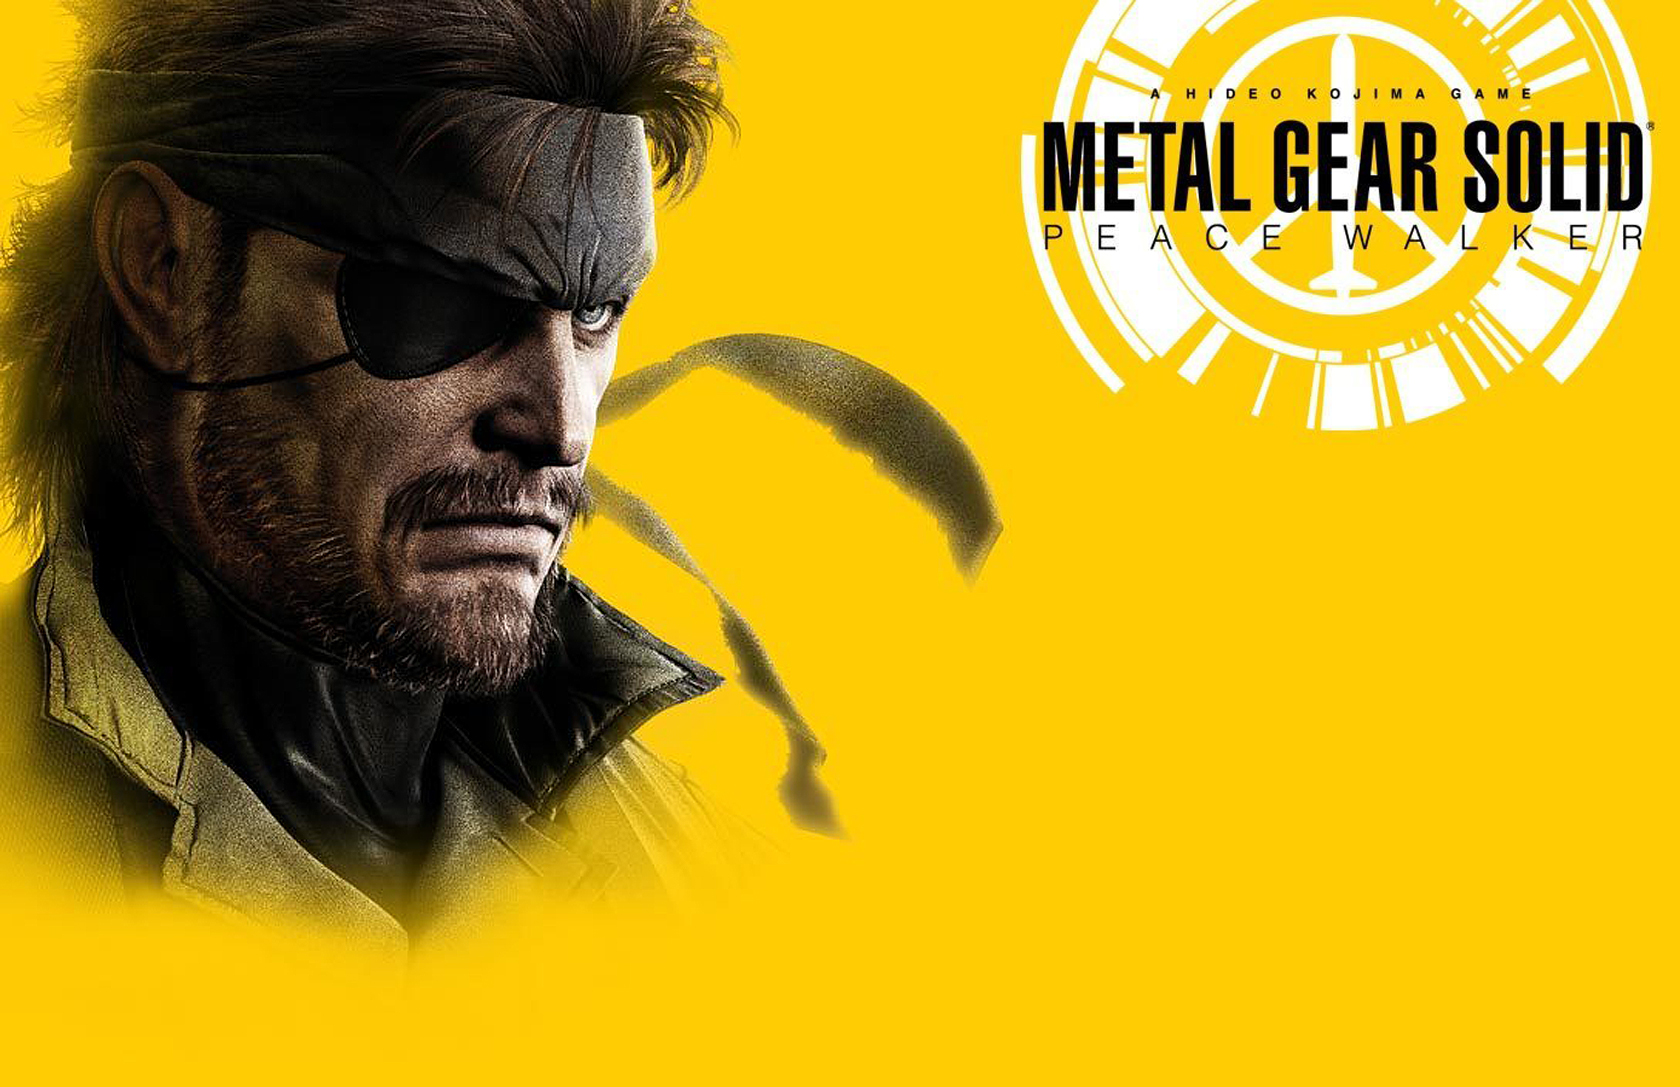 Metal Gear Solid Peace Walker Wallpaper Jpg